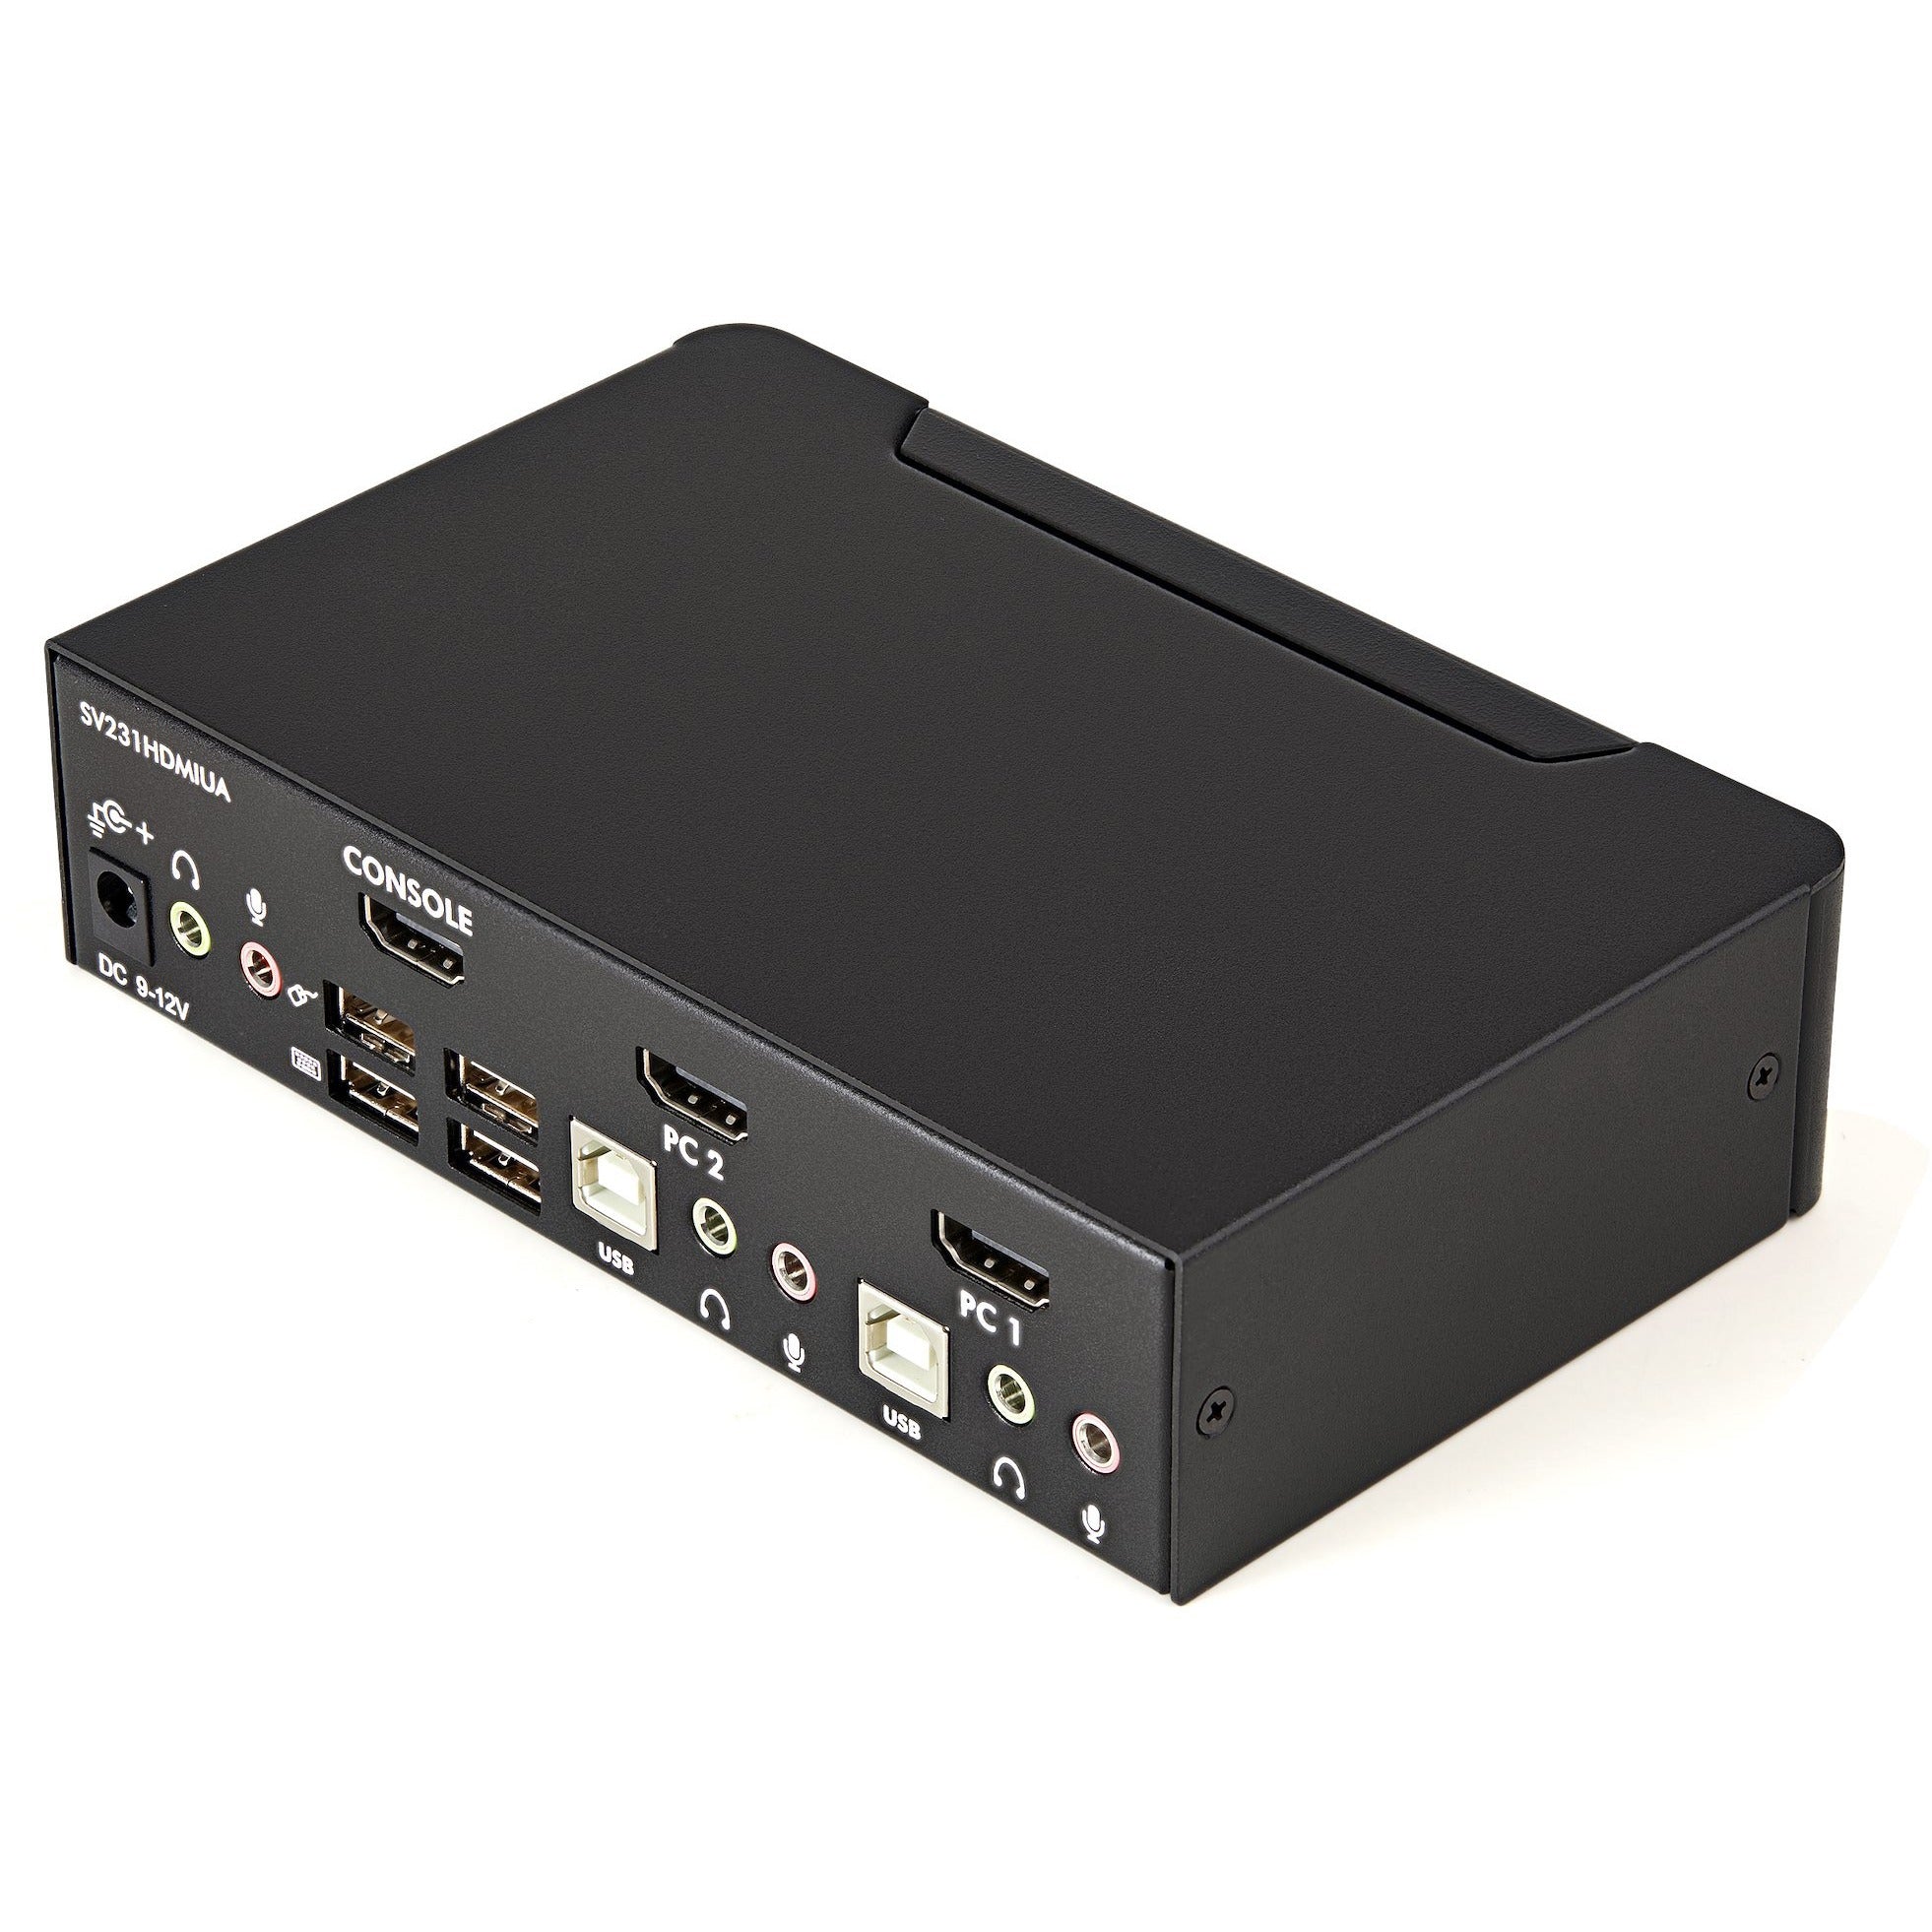 StarTech.com 2 Port USB HDMI KVM Switch w/ Audio & USB 2.0 Hub